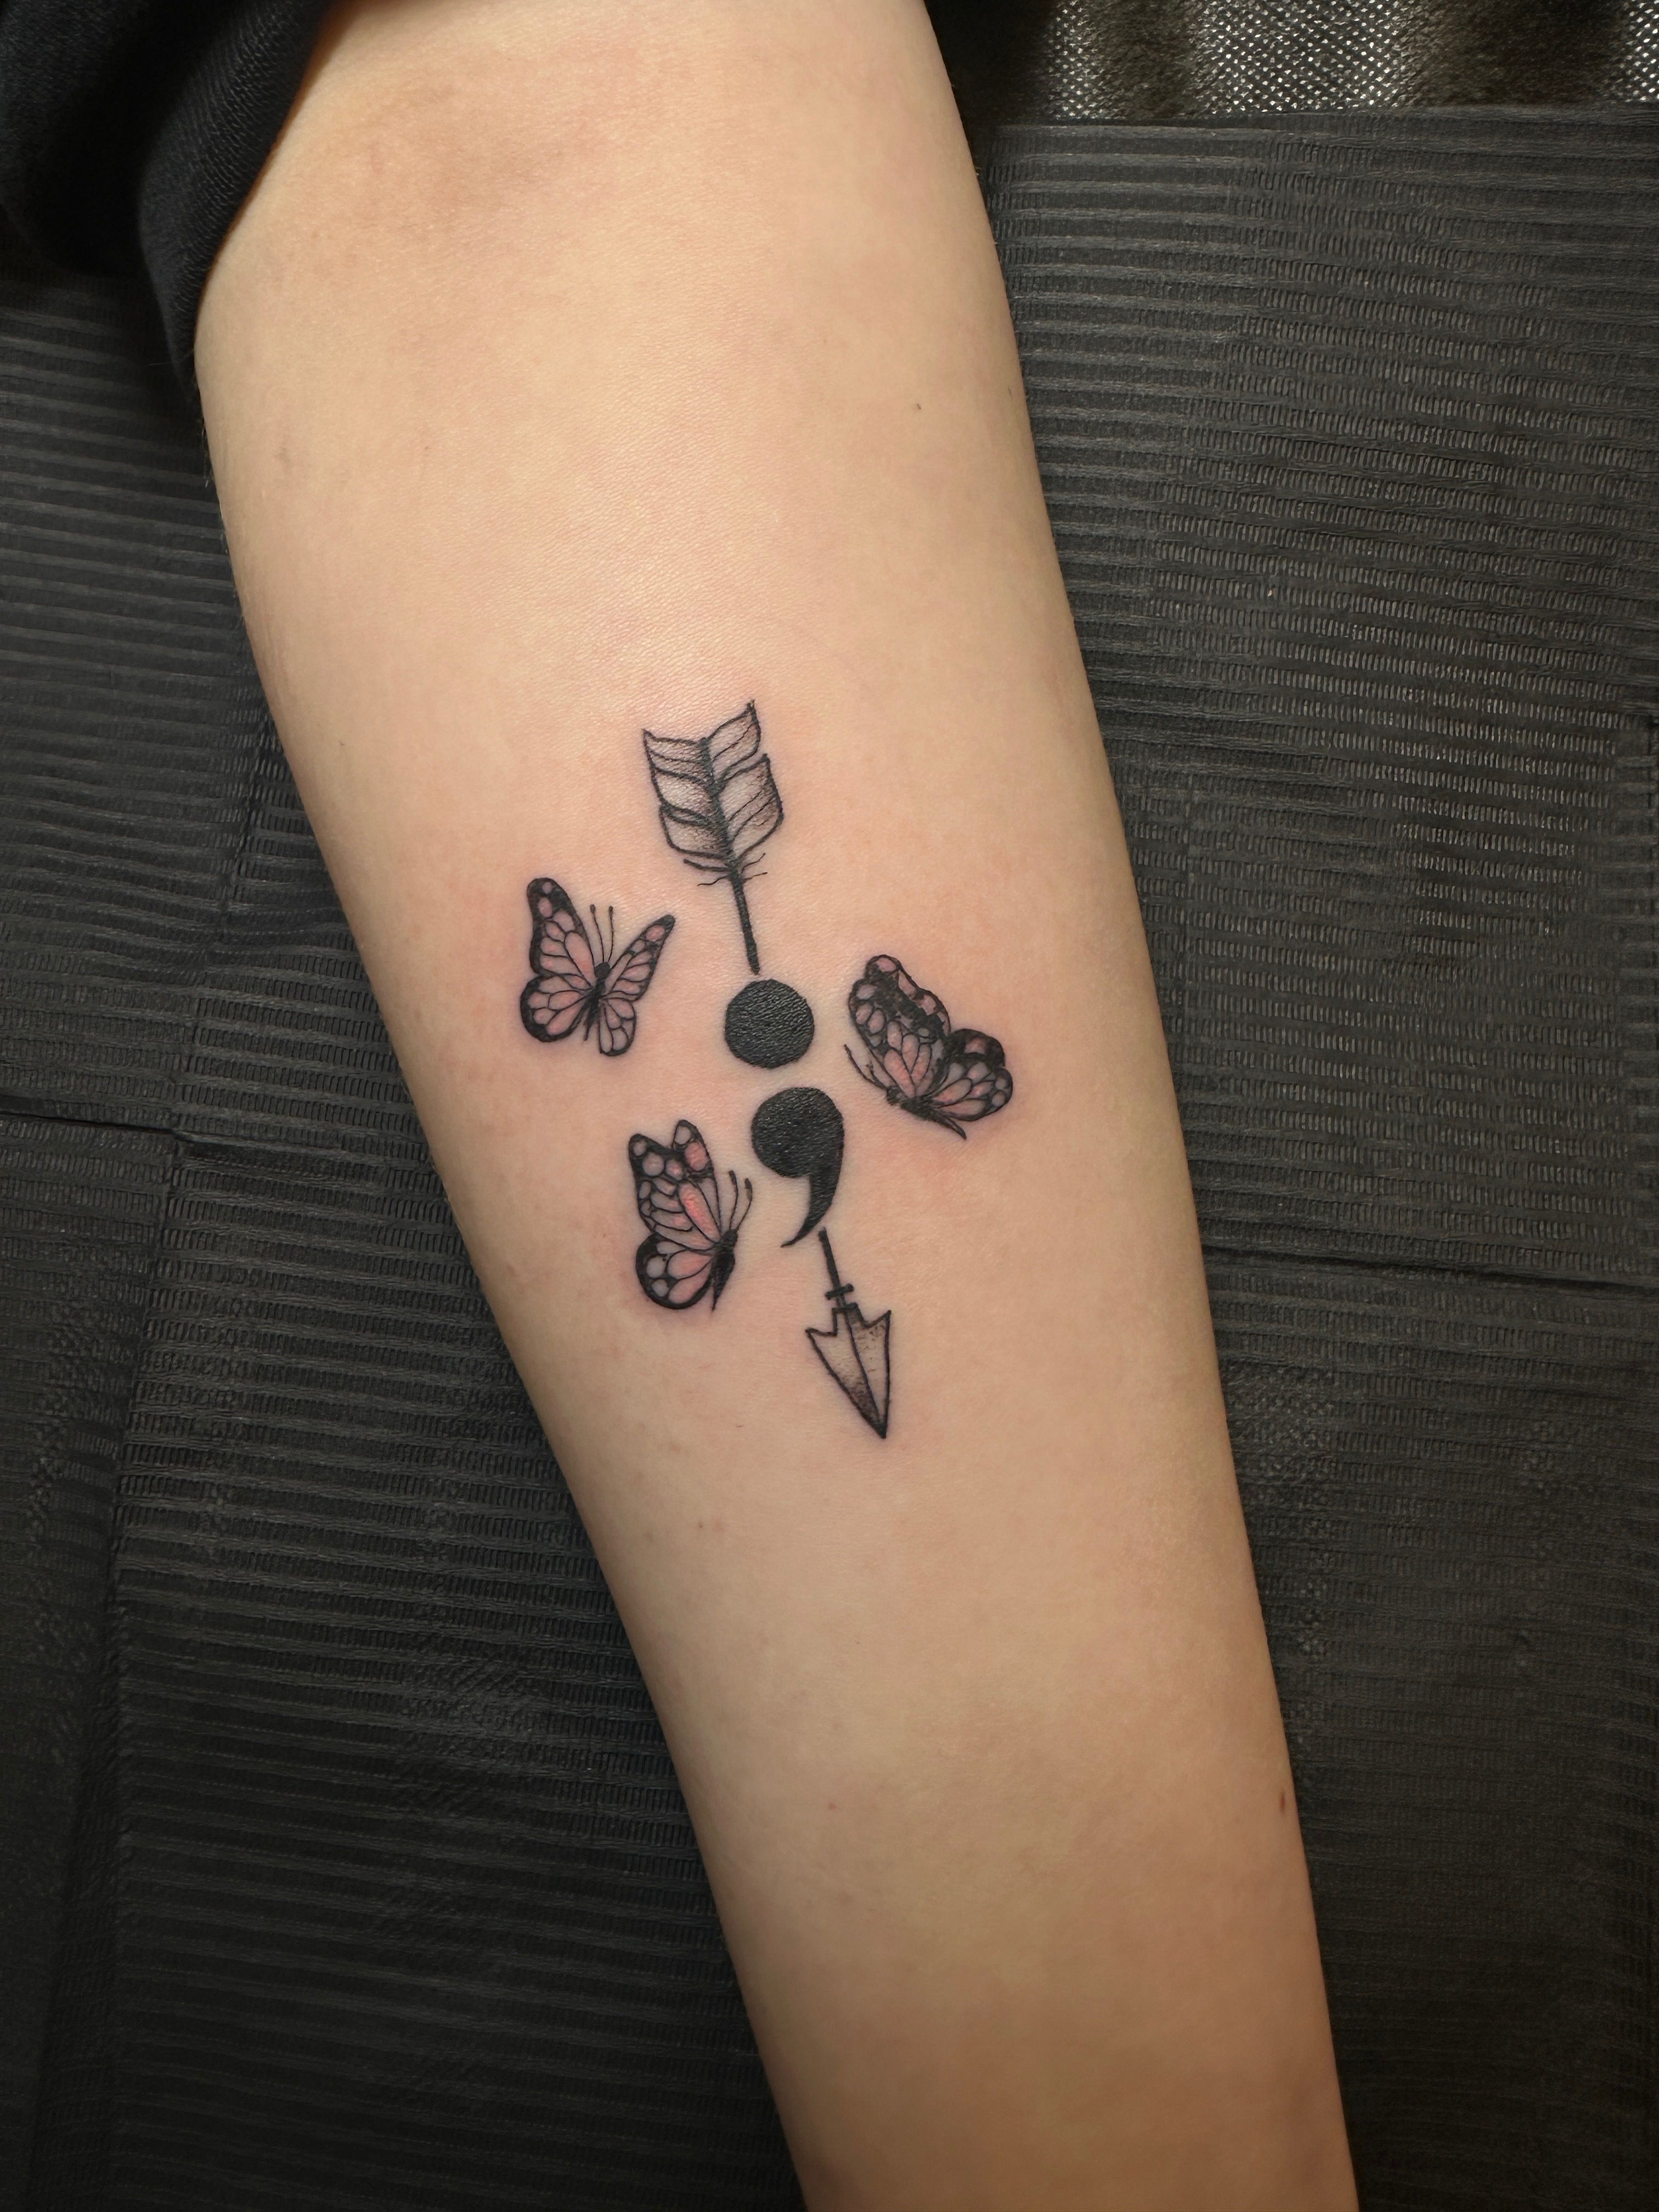 Small arrow temporary tattoo